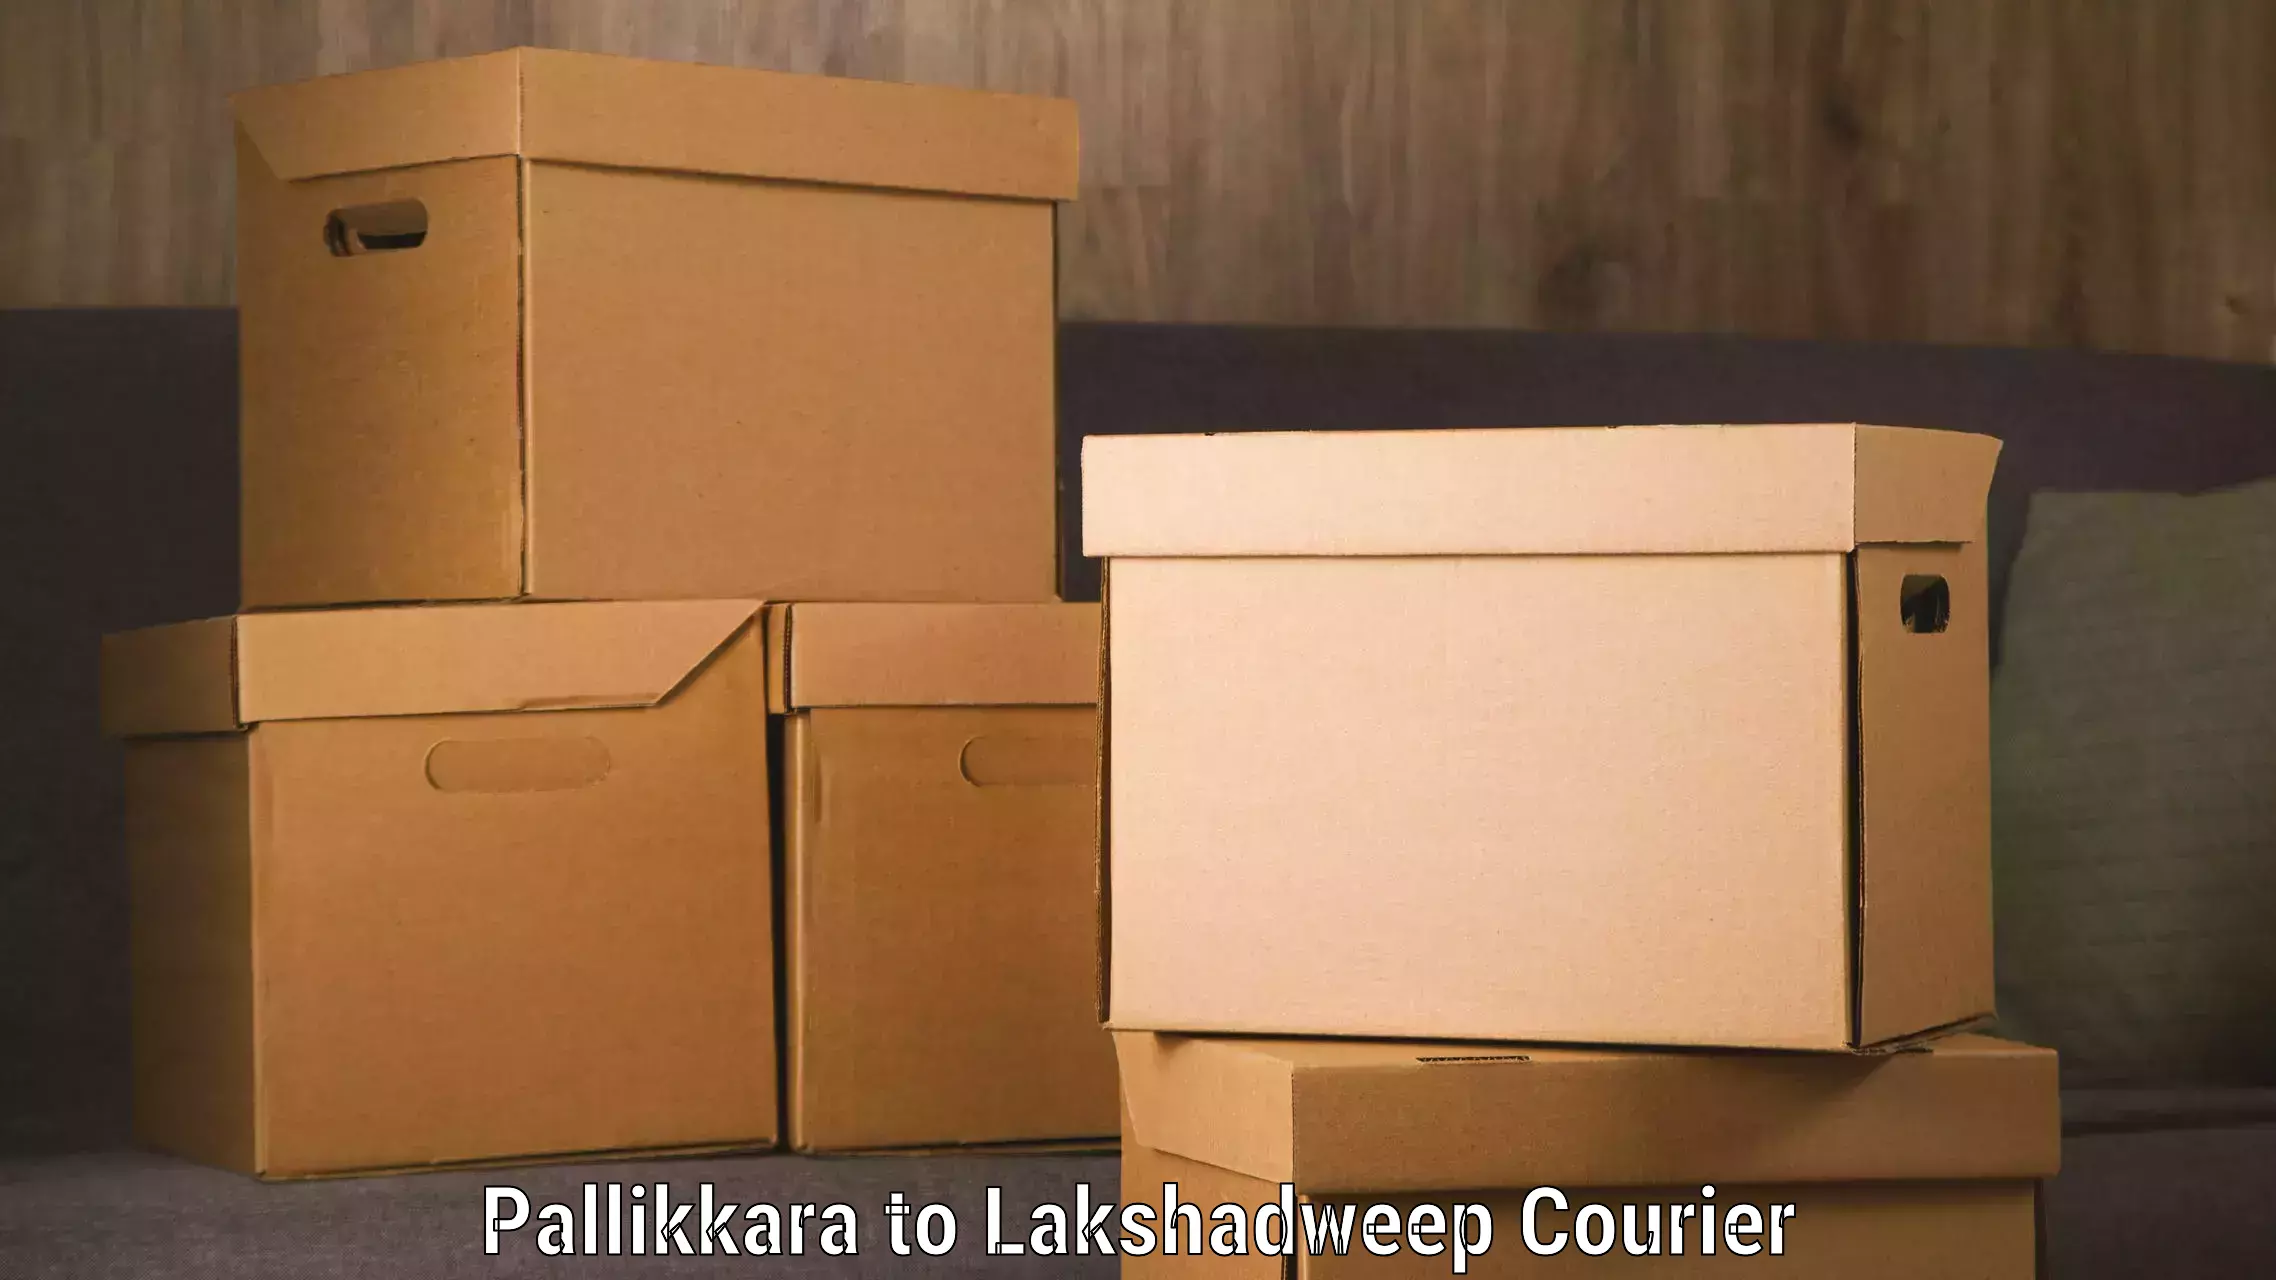 Express postal services Pallikkara to Lakshadweep